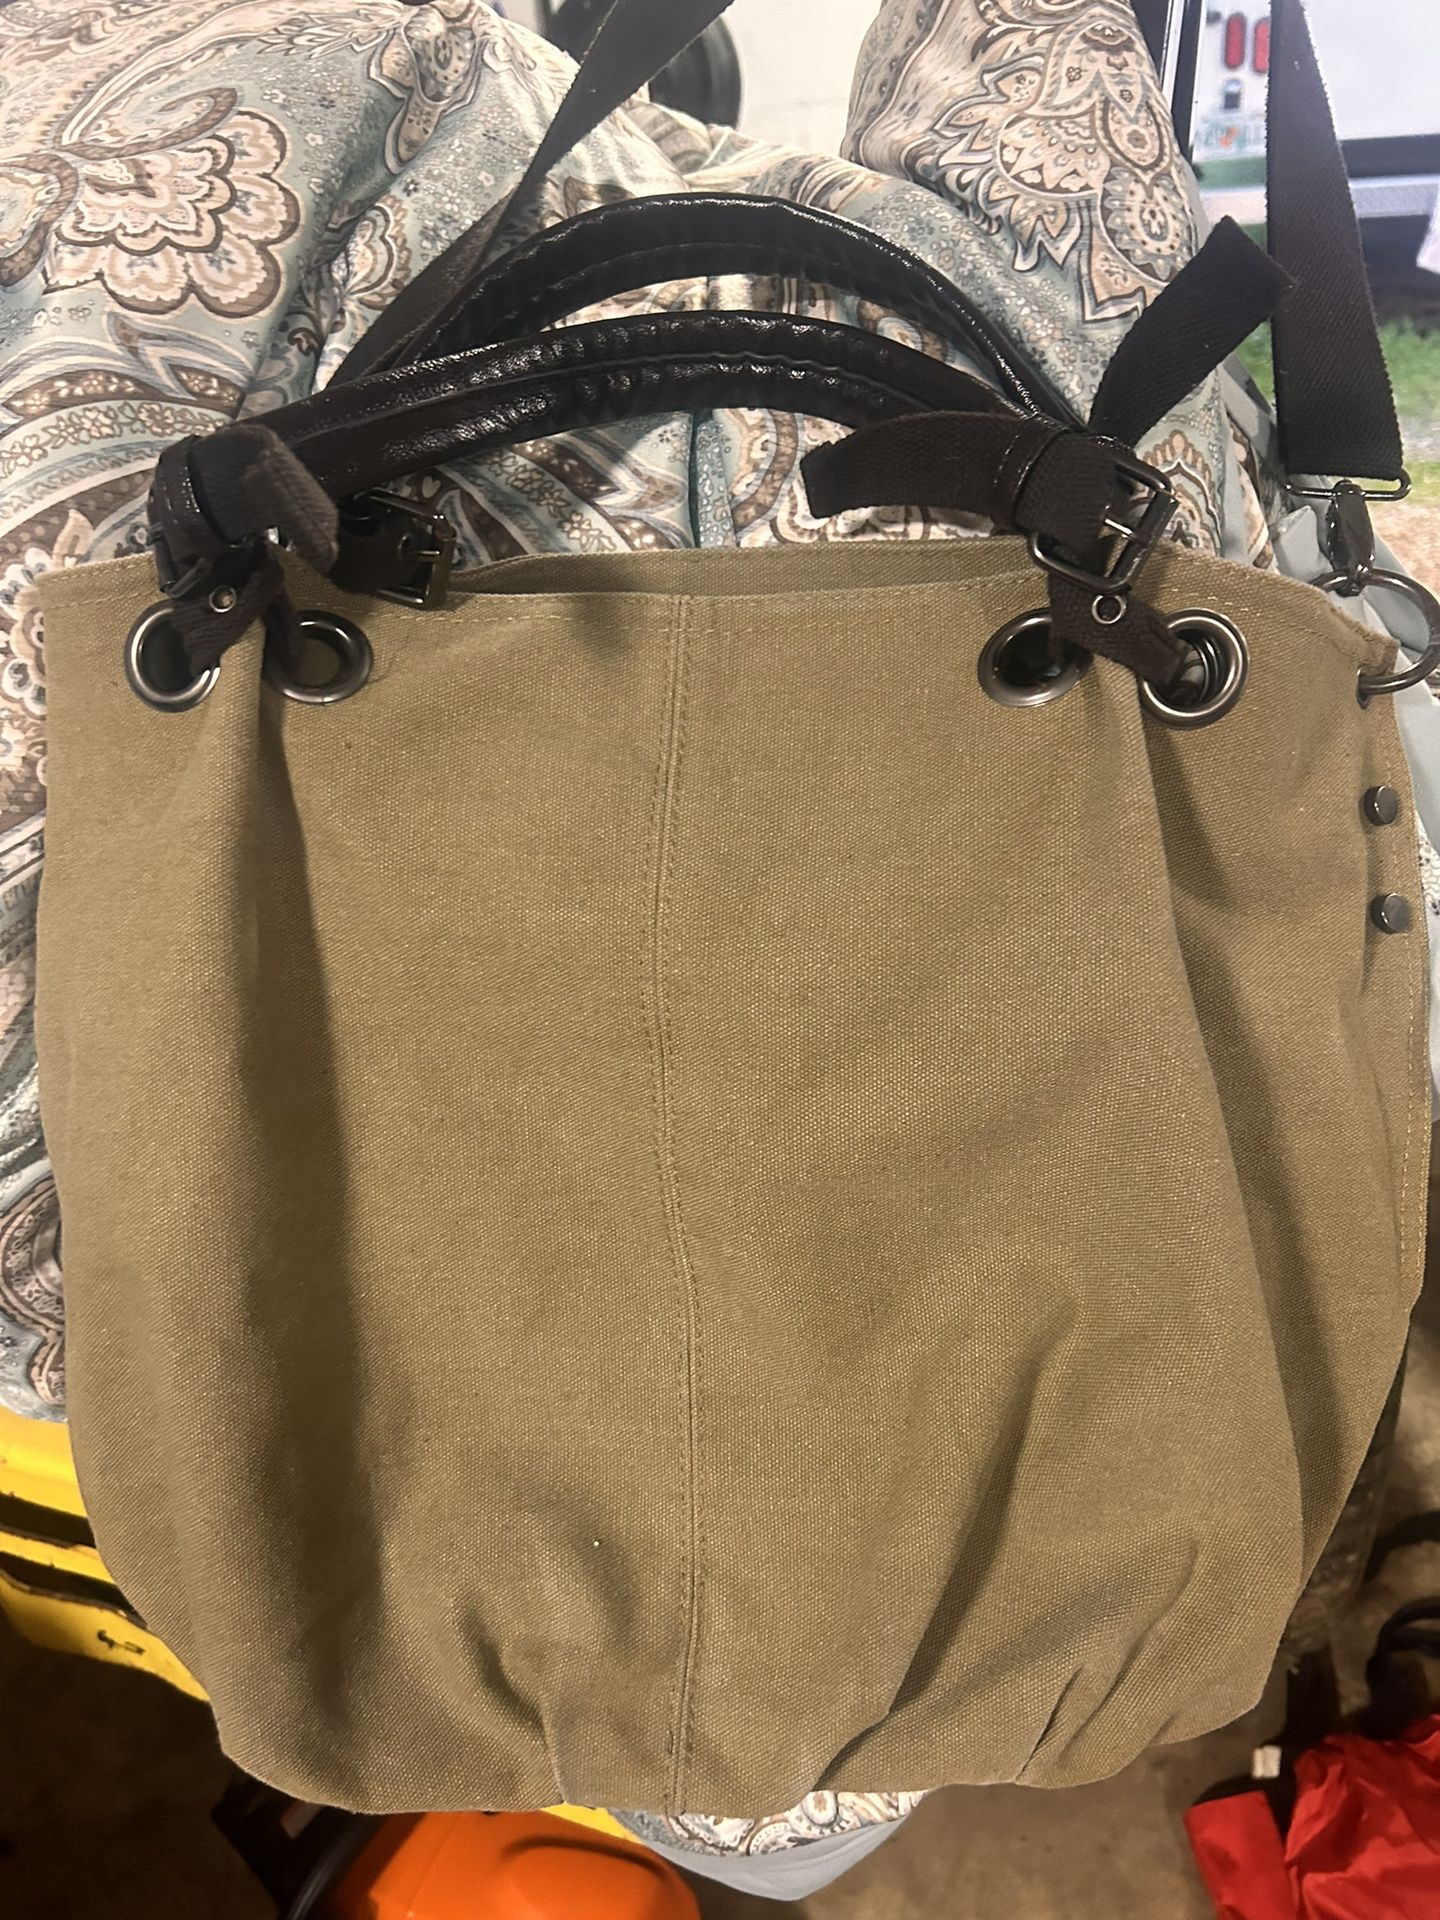 Vintage Large Capacity Tote Bag